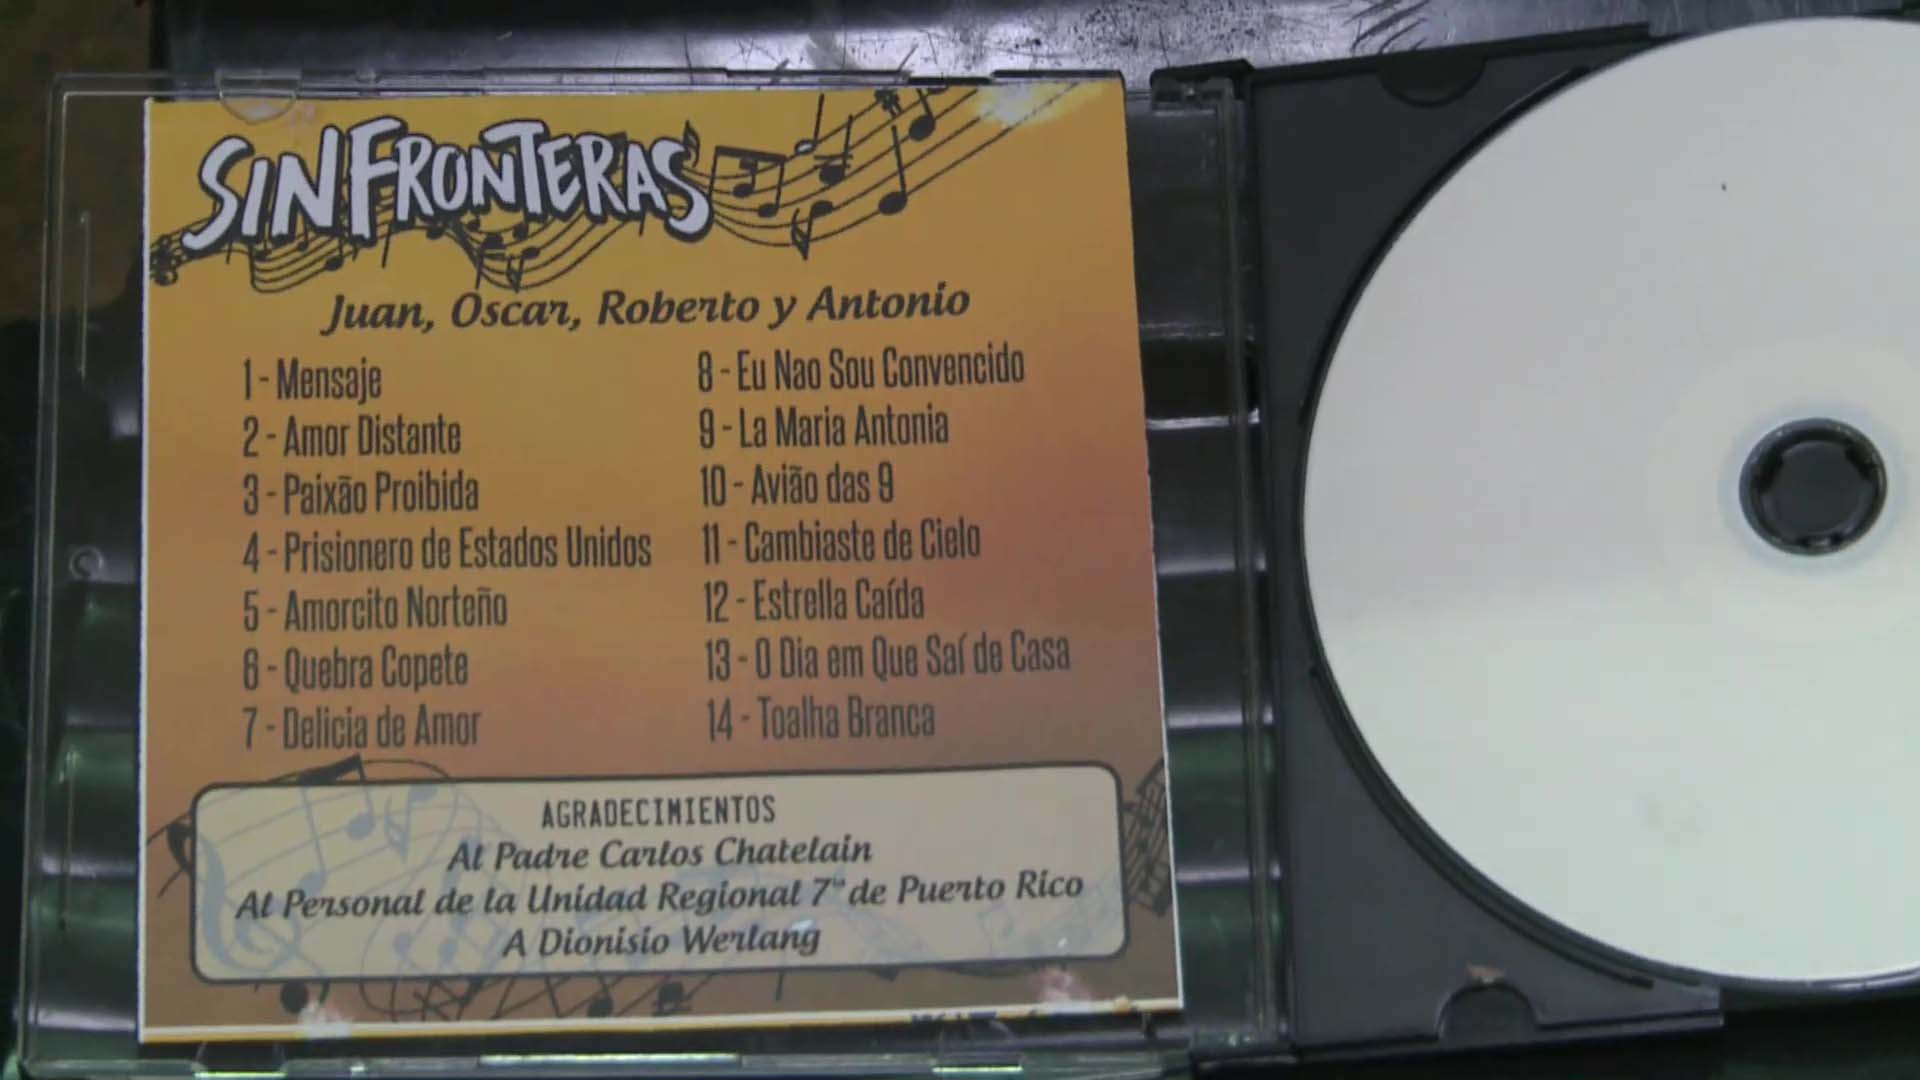 Reclusos de la unidad penal de Puerto Rico formaron una banda y grabaron un CD